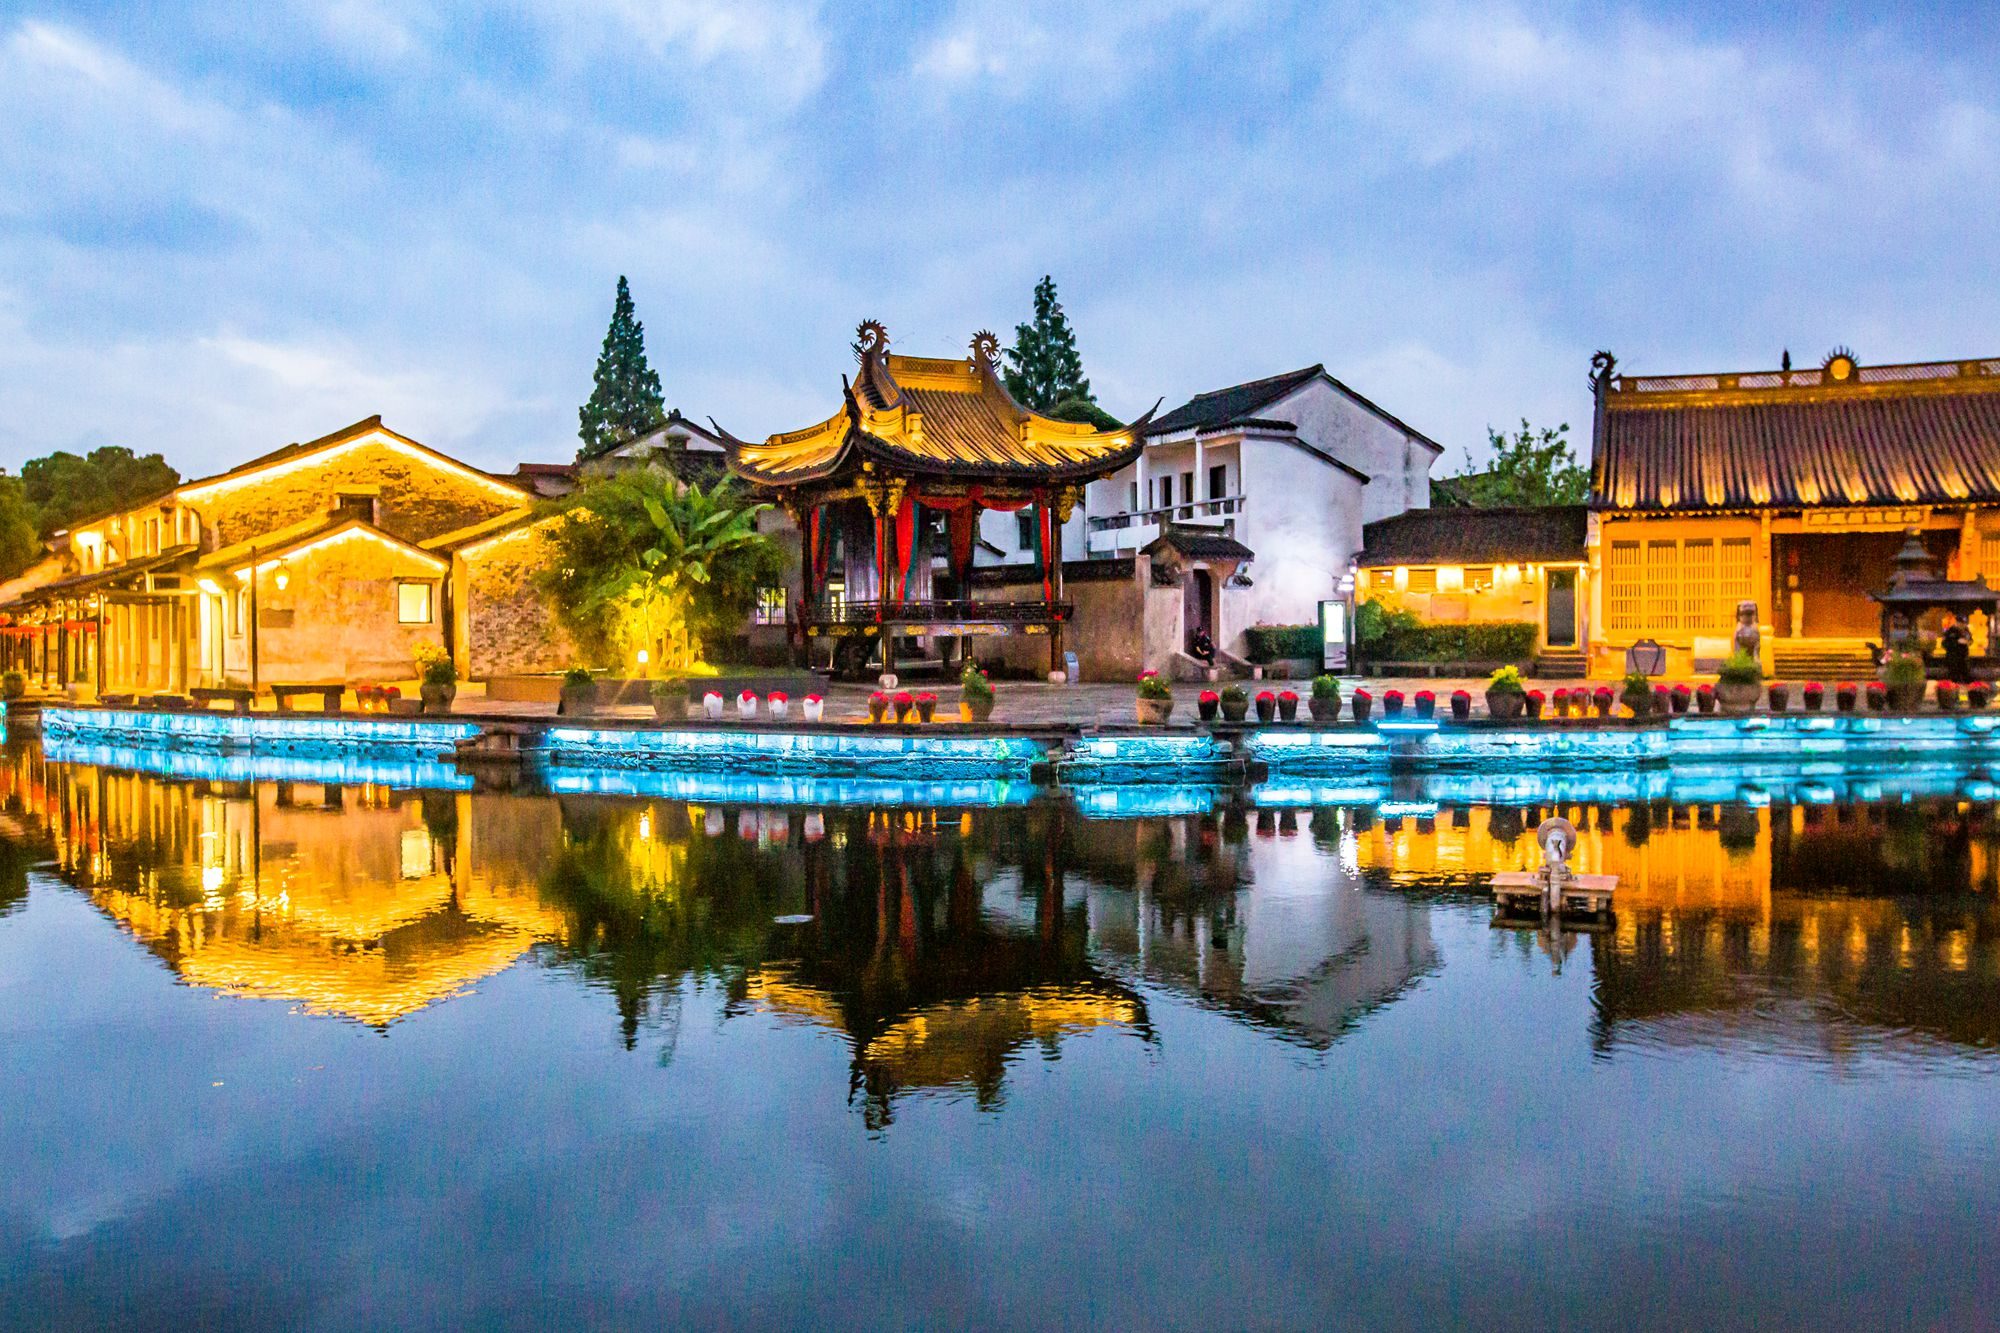 浙江绍兴有一座黄酒小镇,小桥流水,黛瓦人家,充满了江南风情